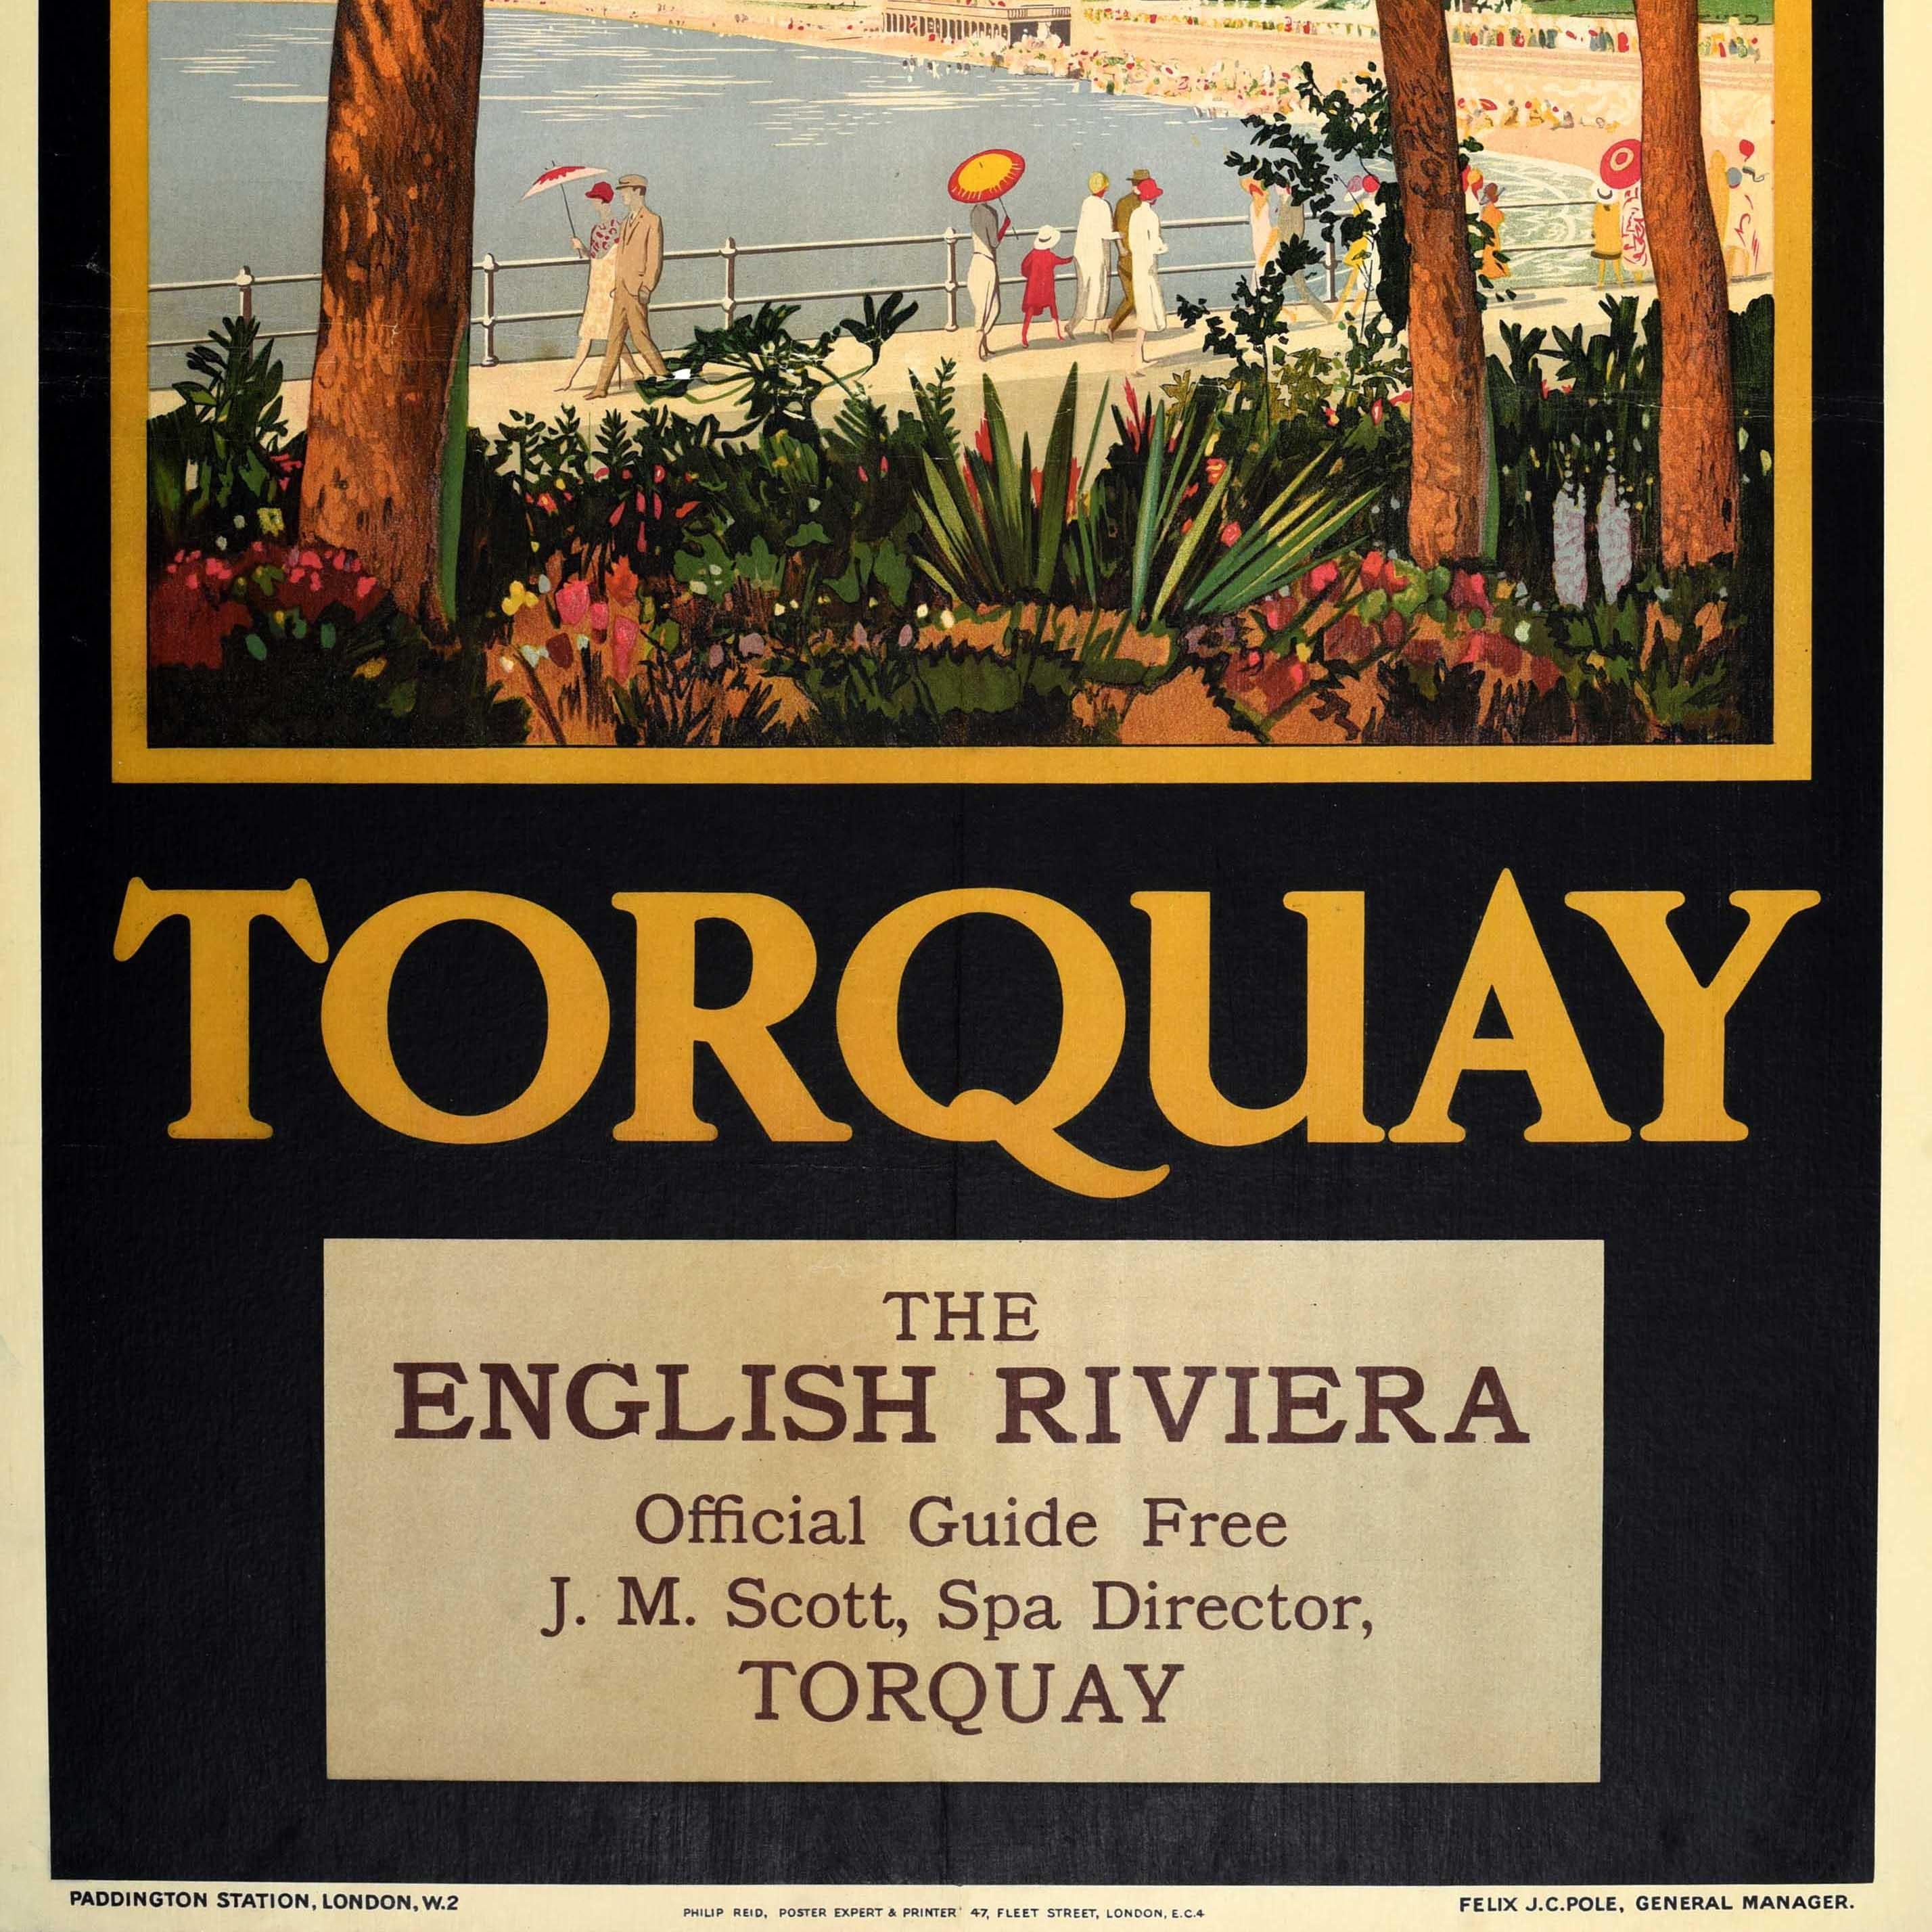 Original Vintage Great Western Railway Plakat für Torquay The English Riviera mit großen Kunstwerk zeigt elegant gekleidete Menschen zu Fuß entlang der Promenade, darunter Paare und Familien und Damen halten bunte Sonnenschirme vor einem überfüllten